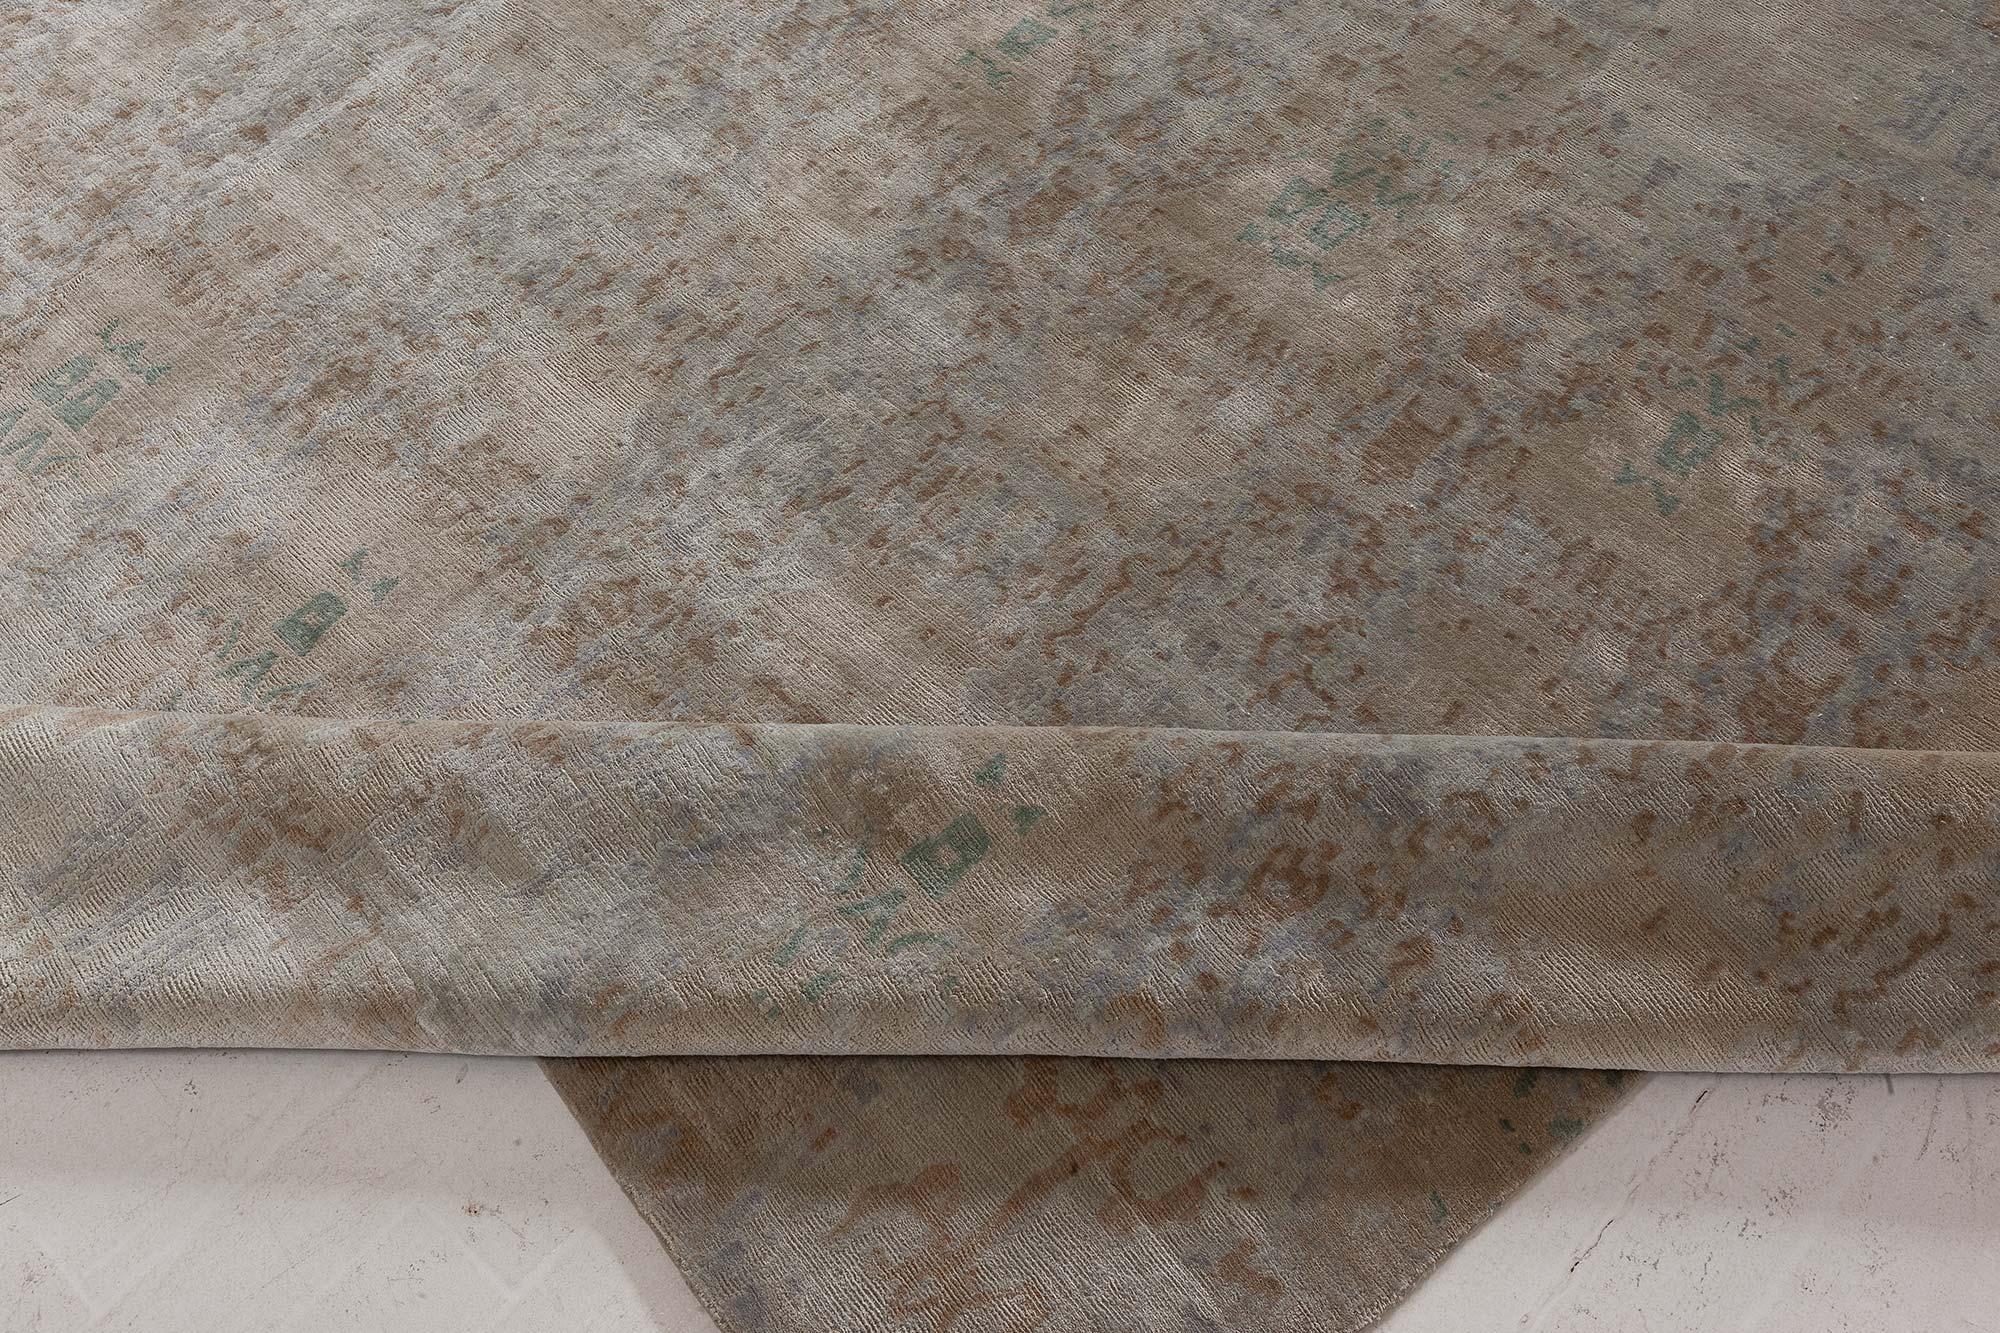 Tapis en soie moderne Eskayel-Reflection fait main pour Doris Leslie Blau.
Taille : 12'0